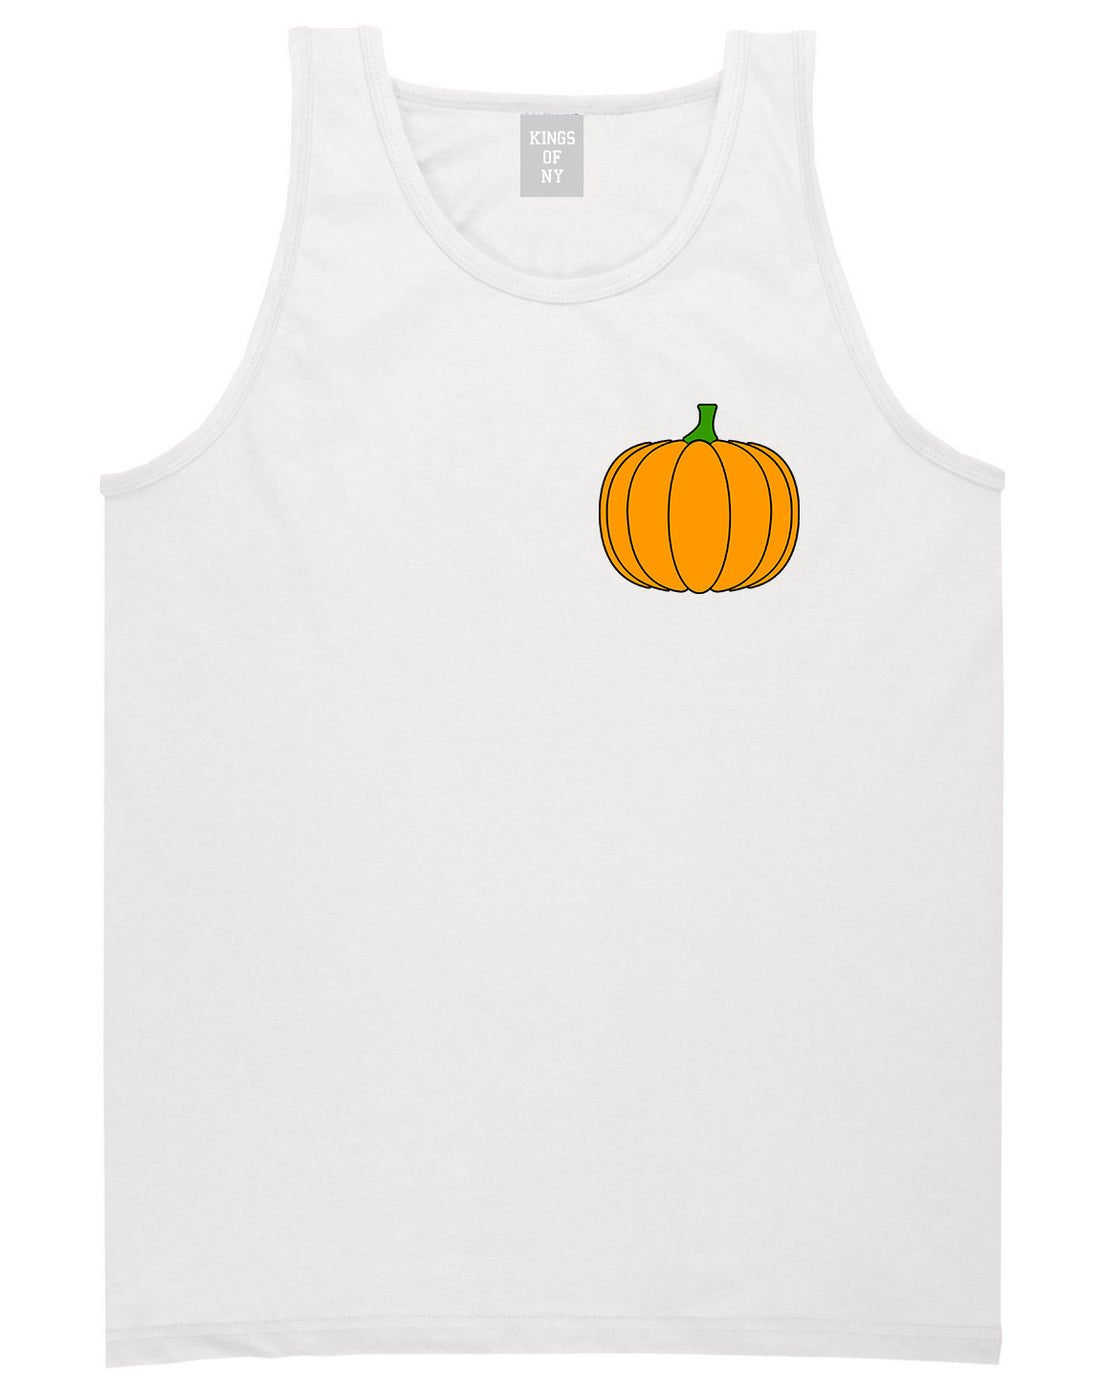 Pumpkin Fall Chest Mens Tank Top T-Shirt White